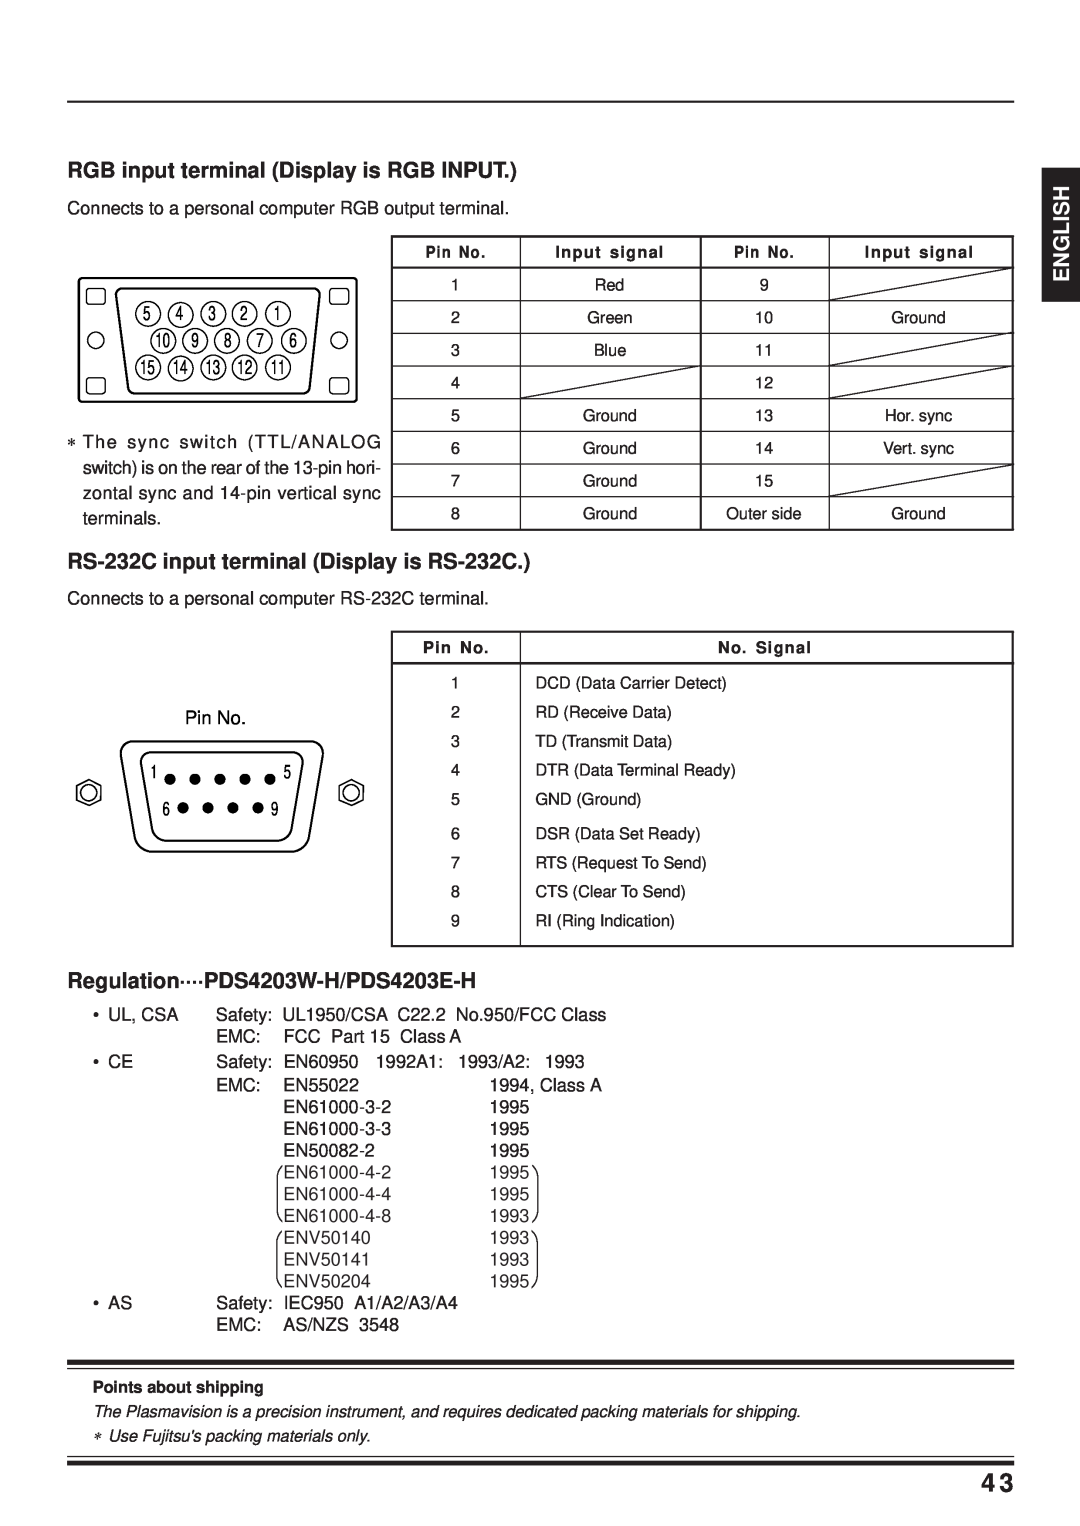 Fujitsu PDS4203W-H / PDS4203E-H RGB input terminal Display is RGB INPUT, RS-232C input terminal Display is RS-232C, Pin No 